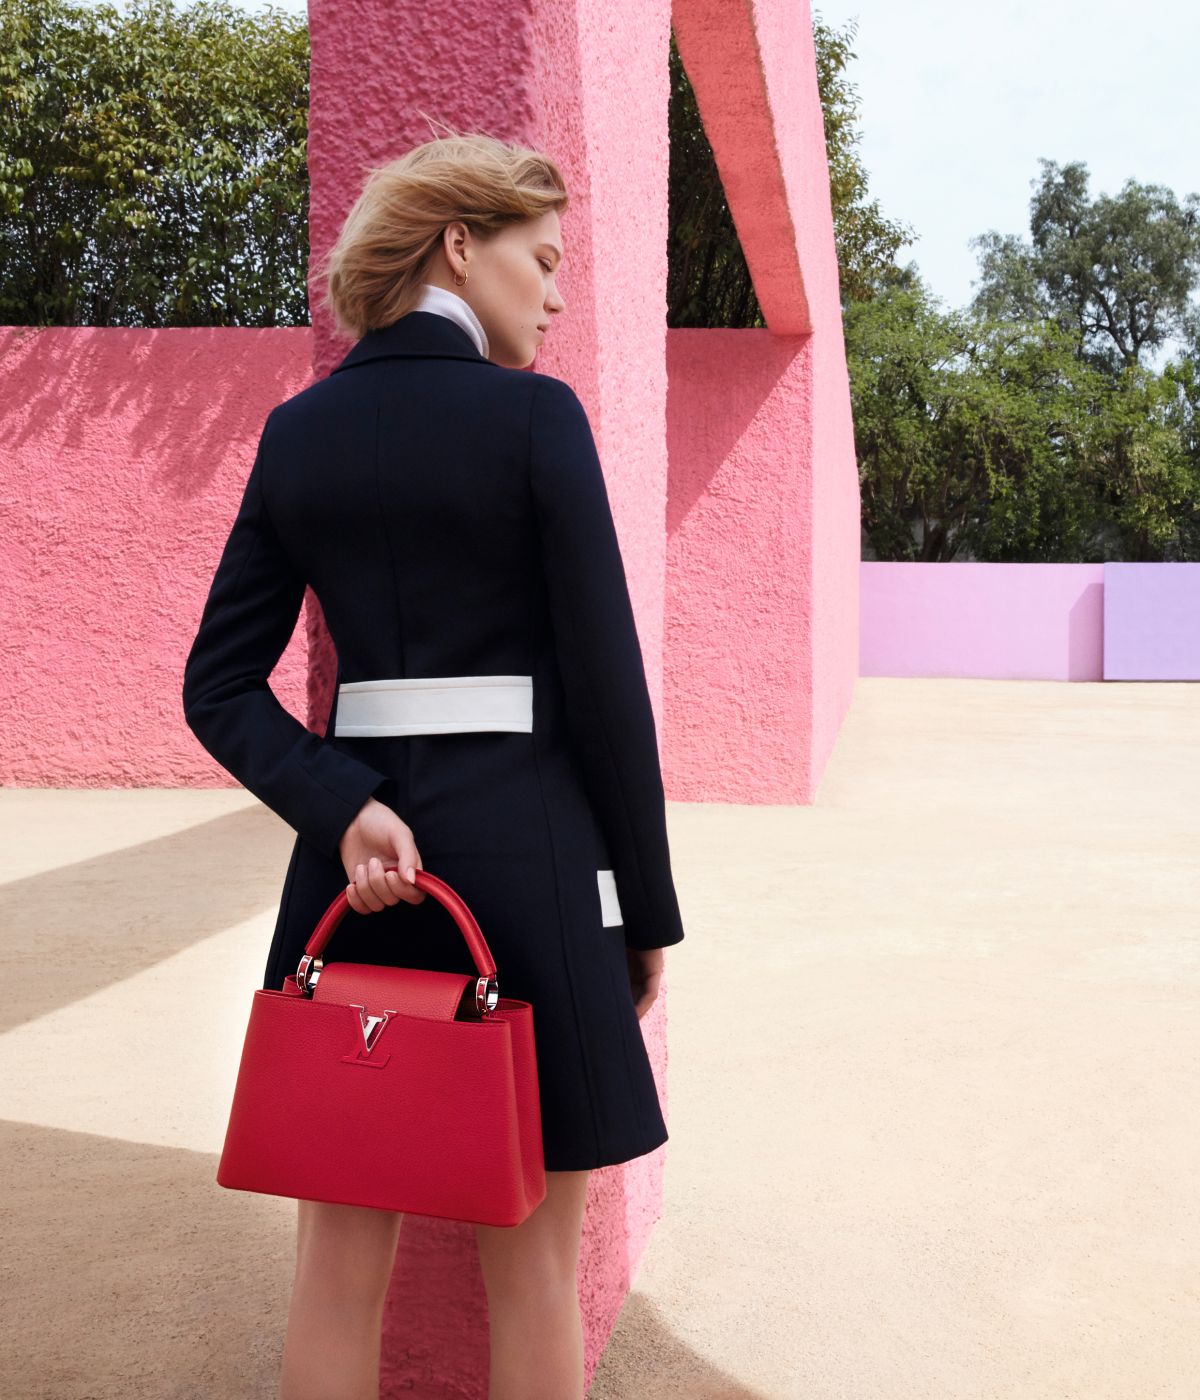 Léa Seydoux : premiers pas d'égérie Louis Vuitton